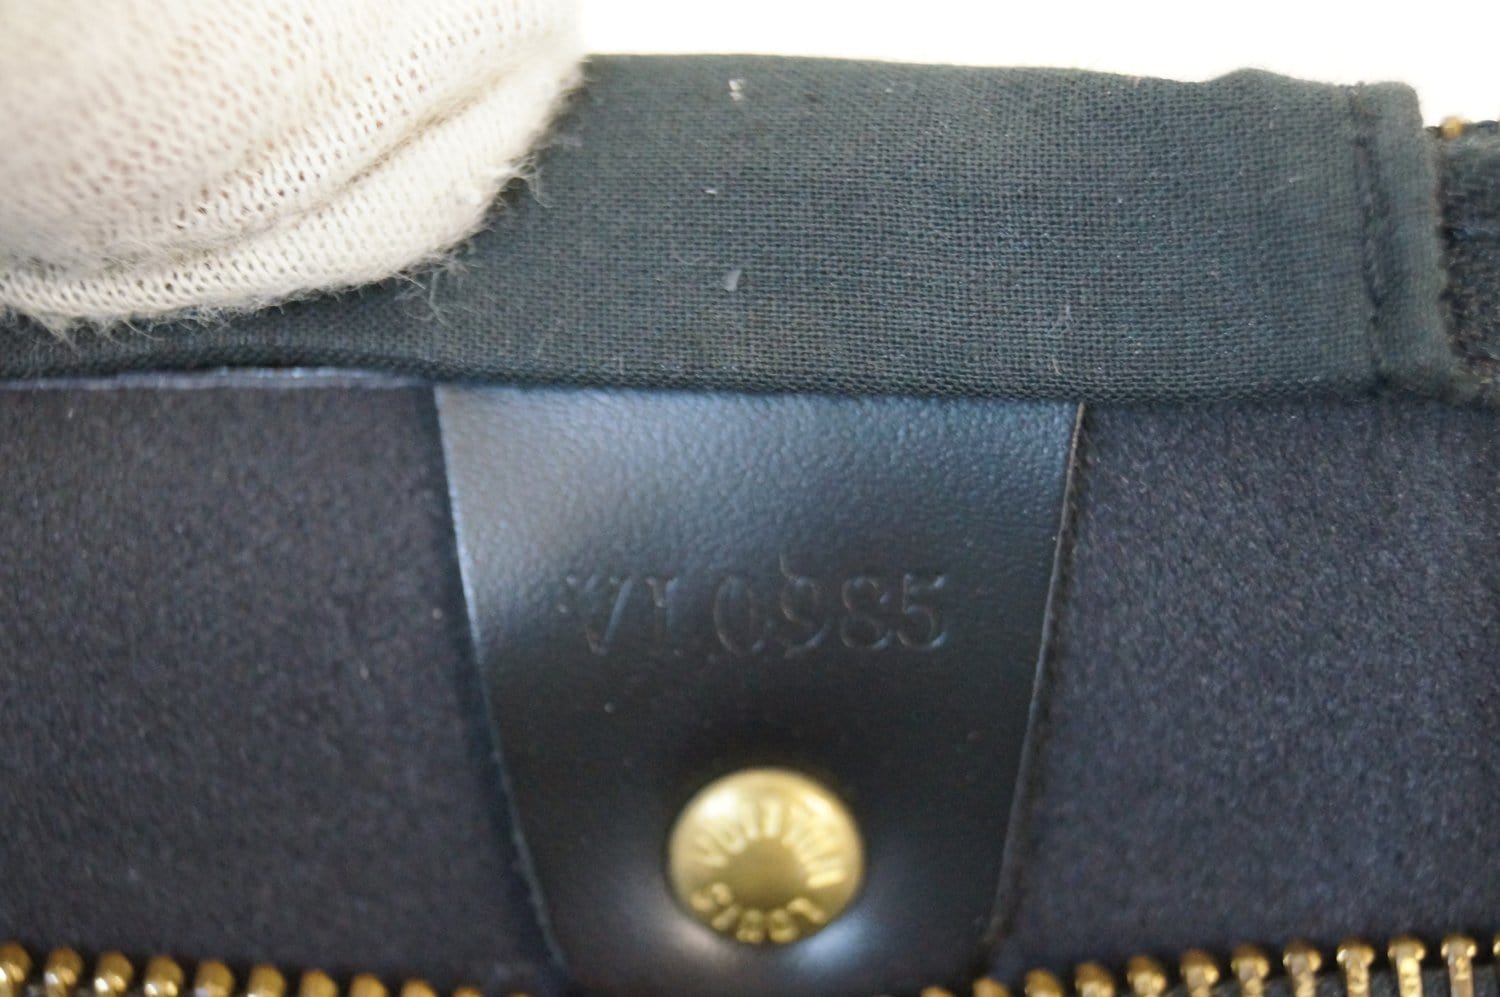 Louis Vuitton Epi Speedy 35 Black – Timeless Vintage Company